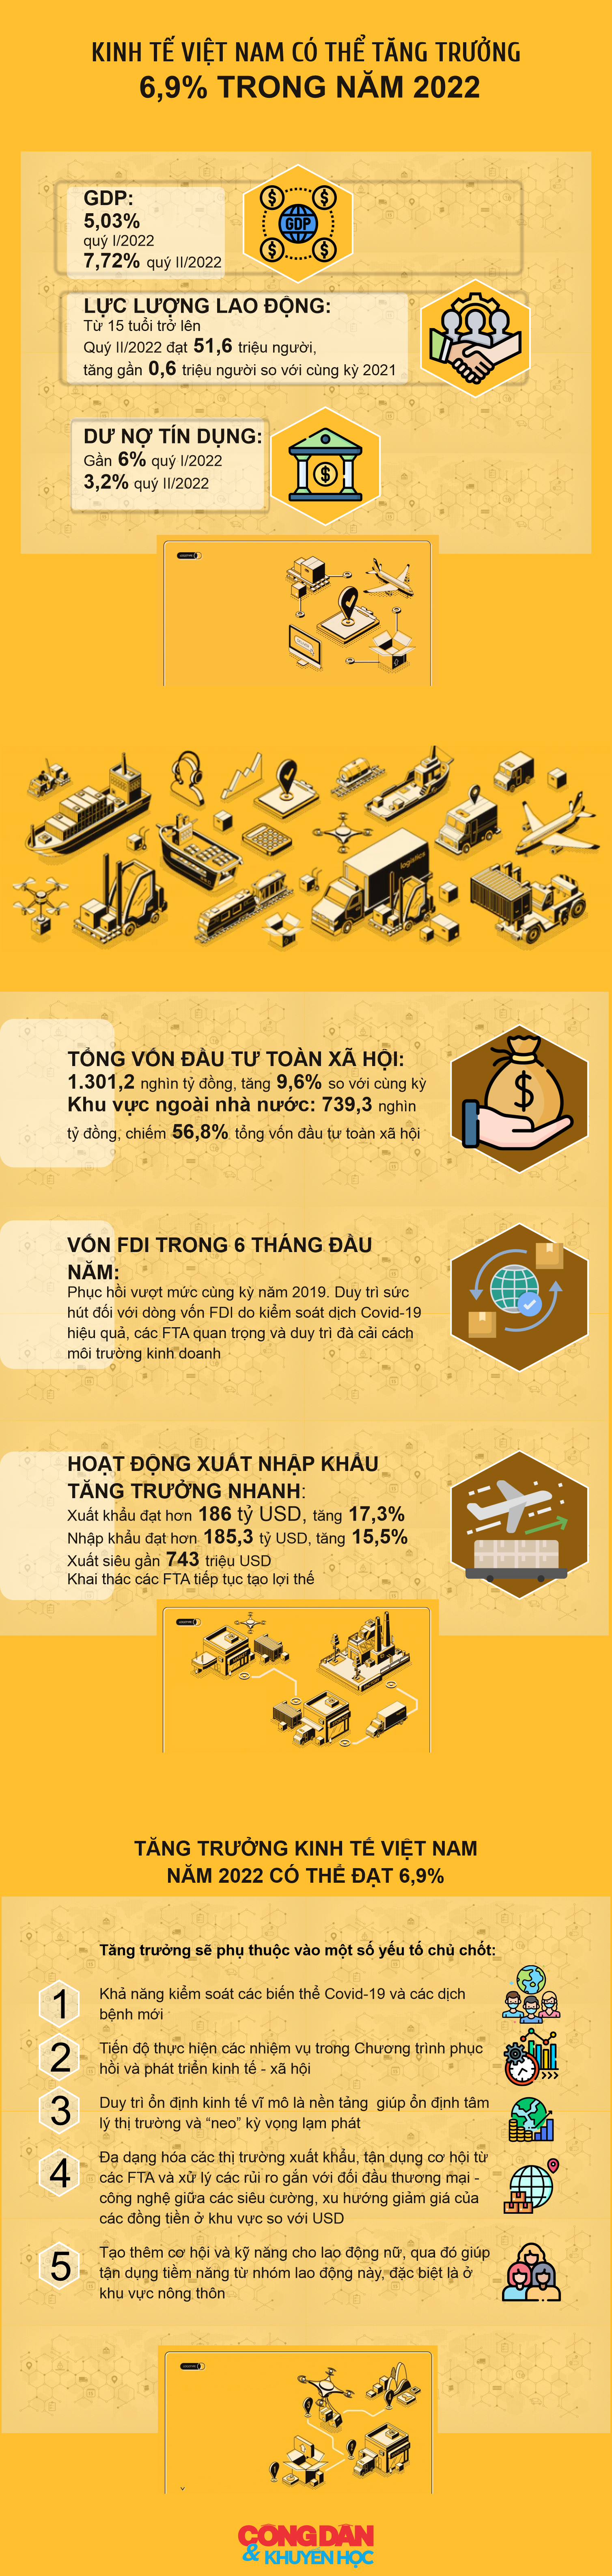 [Infographic] Kinh tế Việt Nam có thể tăng trưởng 6,9% trong năm 2022 - Ảnh 1.